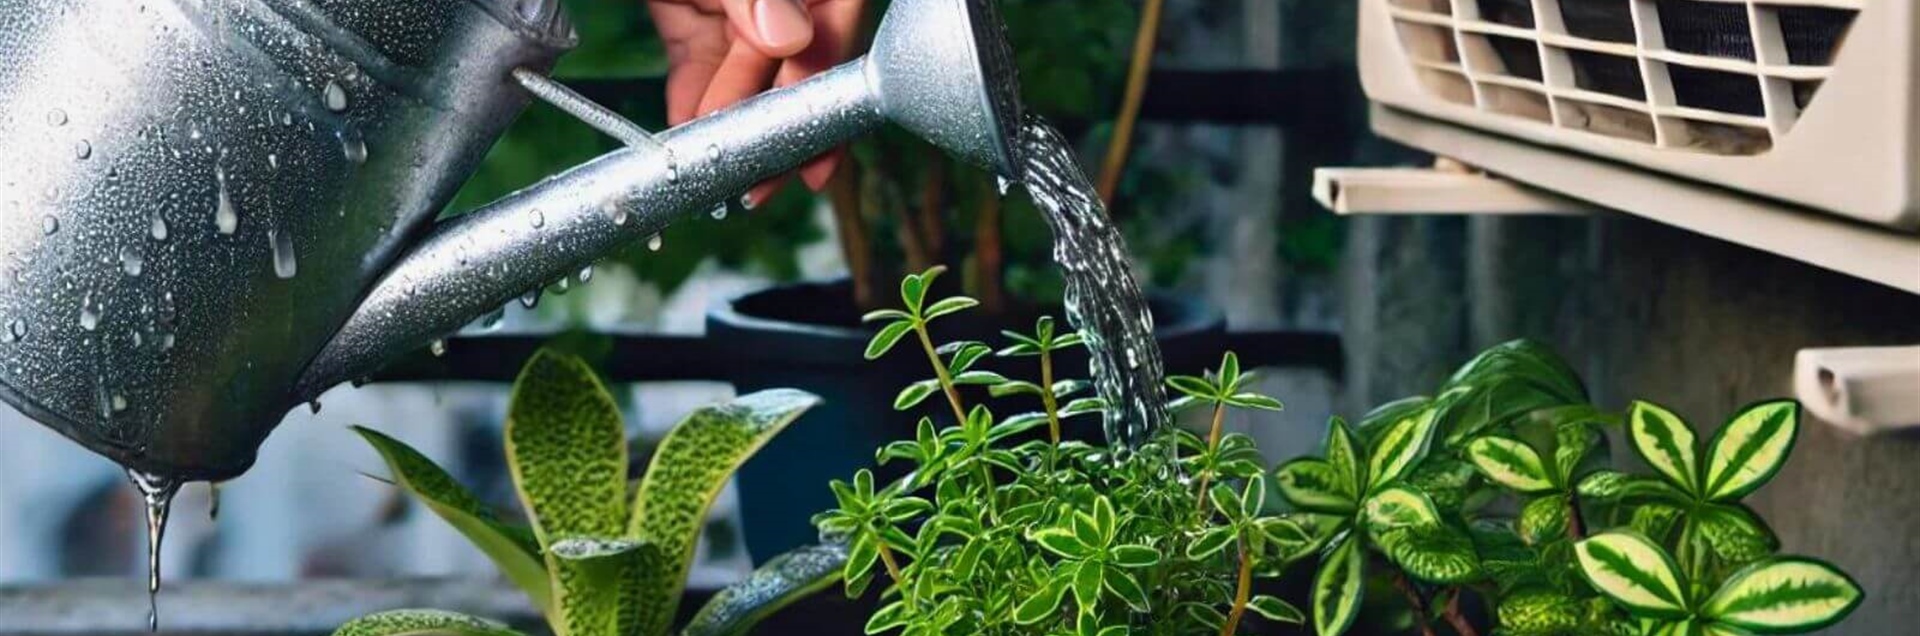 Regar las plantas con agua del aire acondicionado: pros y contras